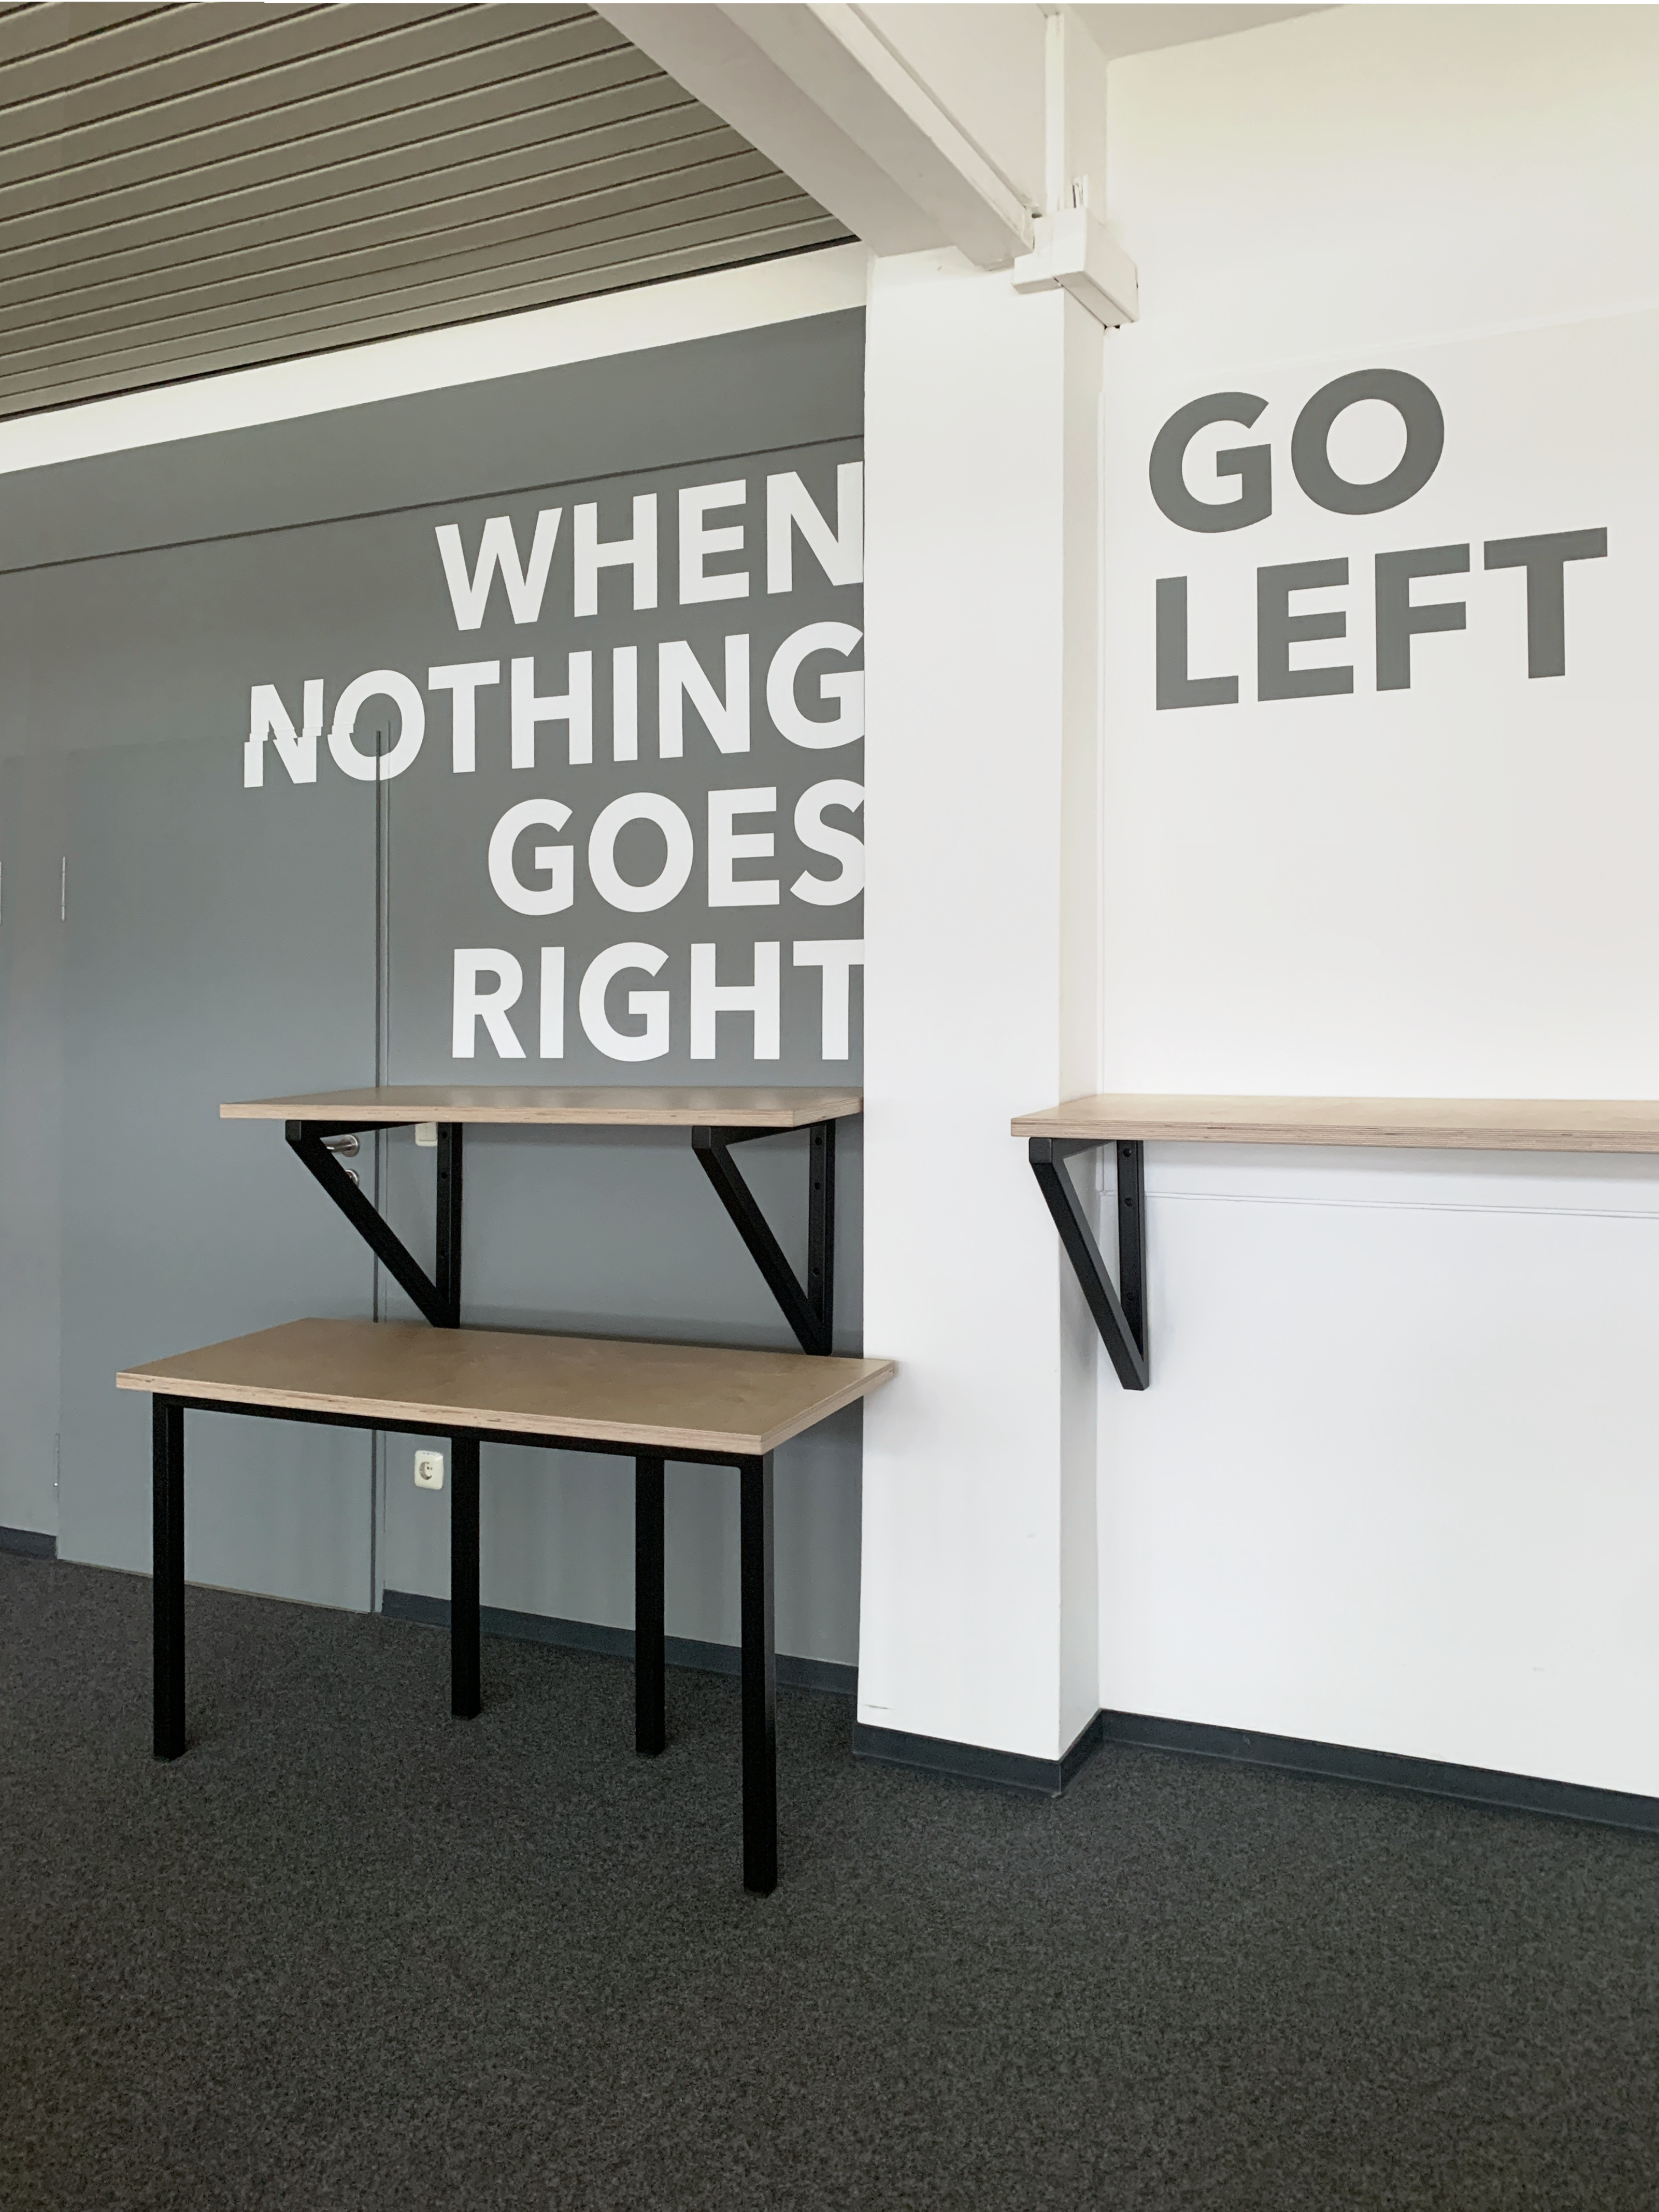 Wandgestaltung Grafik "When nothing goes right, go left" Medienhaus Mainz, Projekt Innenarchitektur Lehre Mainz